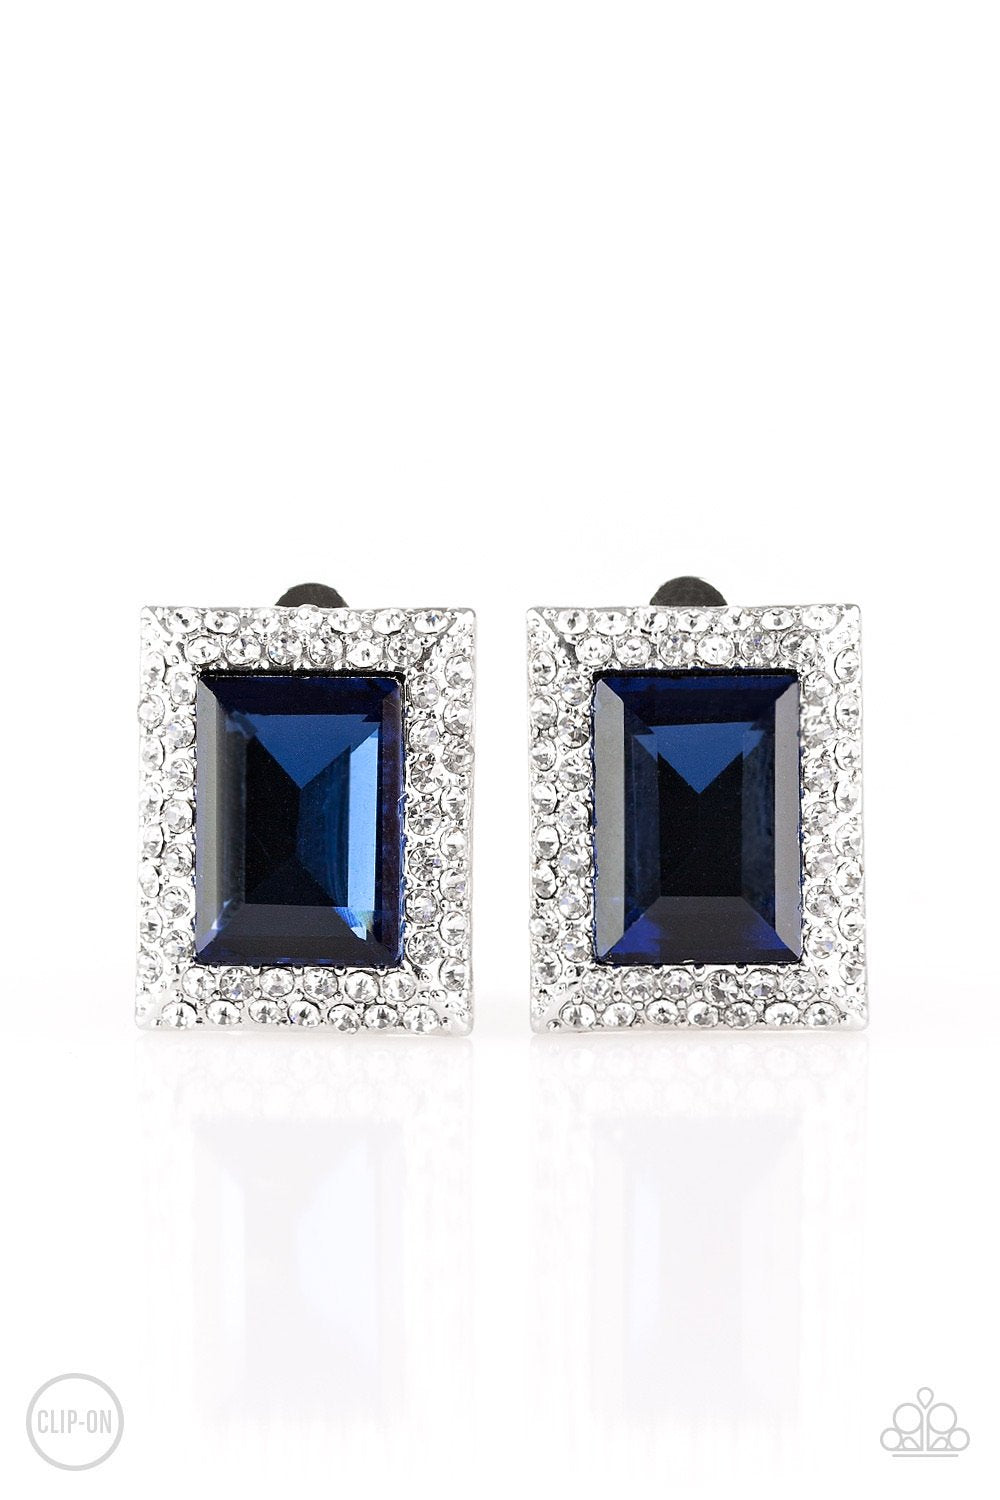 Crowned Couture Blue Clip Earrings - Daria's Blings N Things